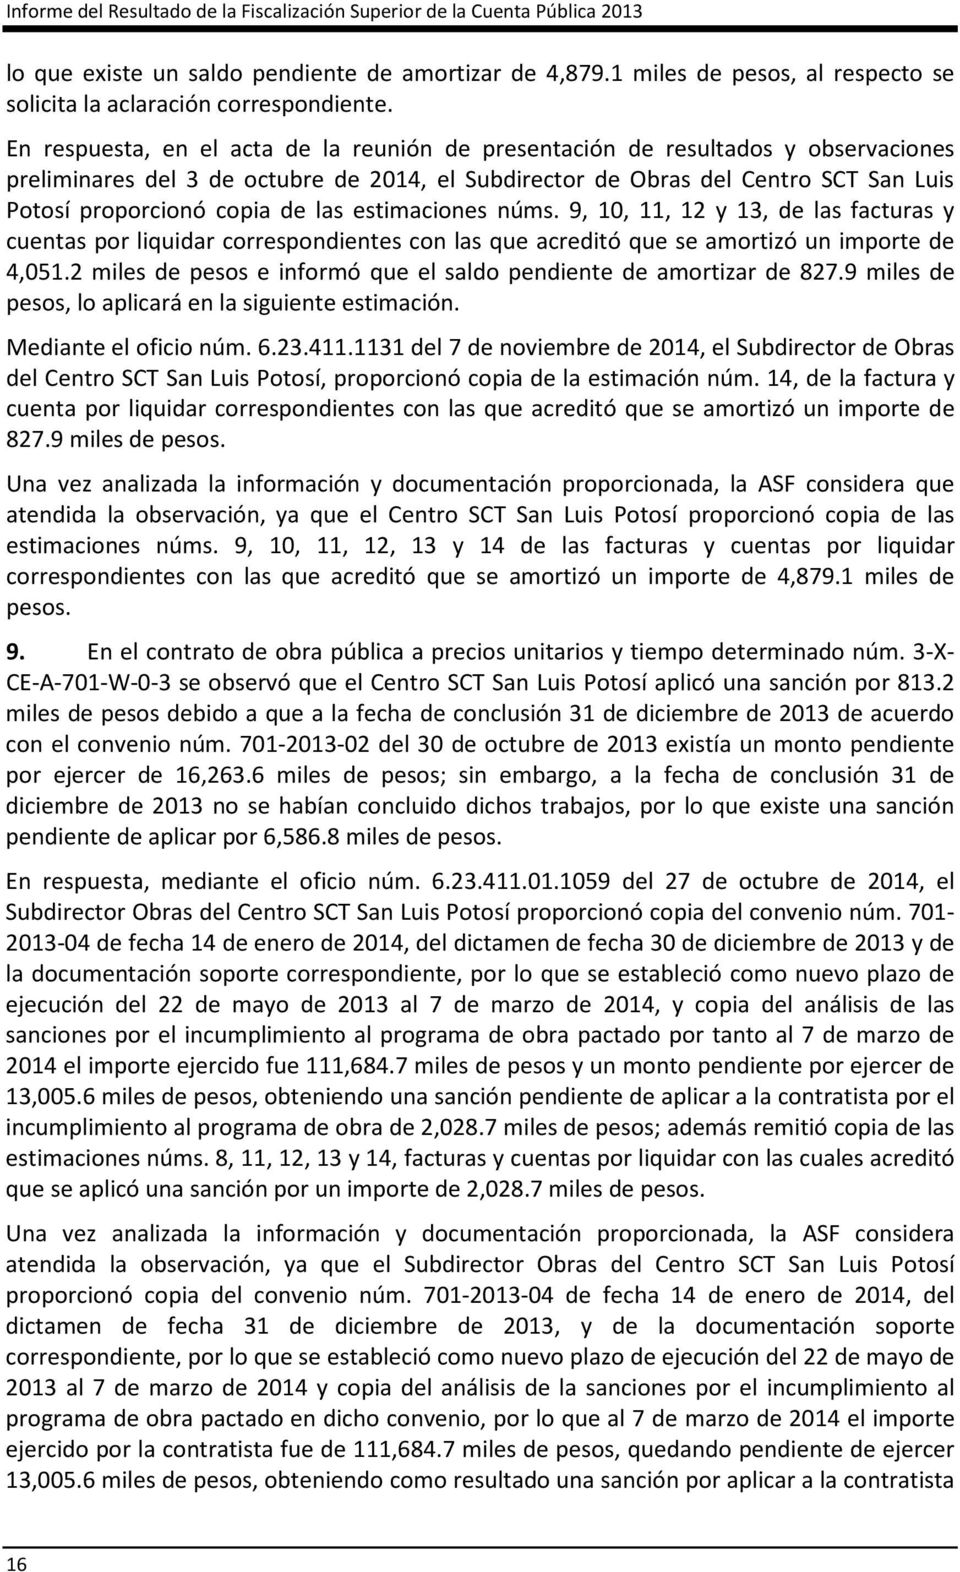 En respuesta, en el acta de la reunión de presentación de resultados y observaciones preliminares del 3 de octubre de 2014, el Subdirector de Obras del Centro SCT San Luis Potosí proporcionó copia de